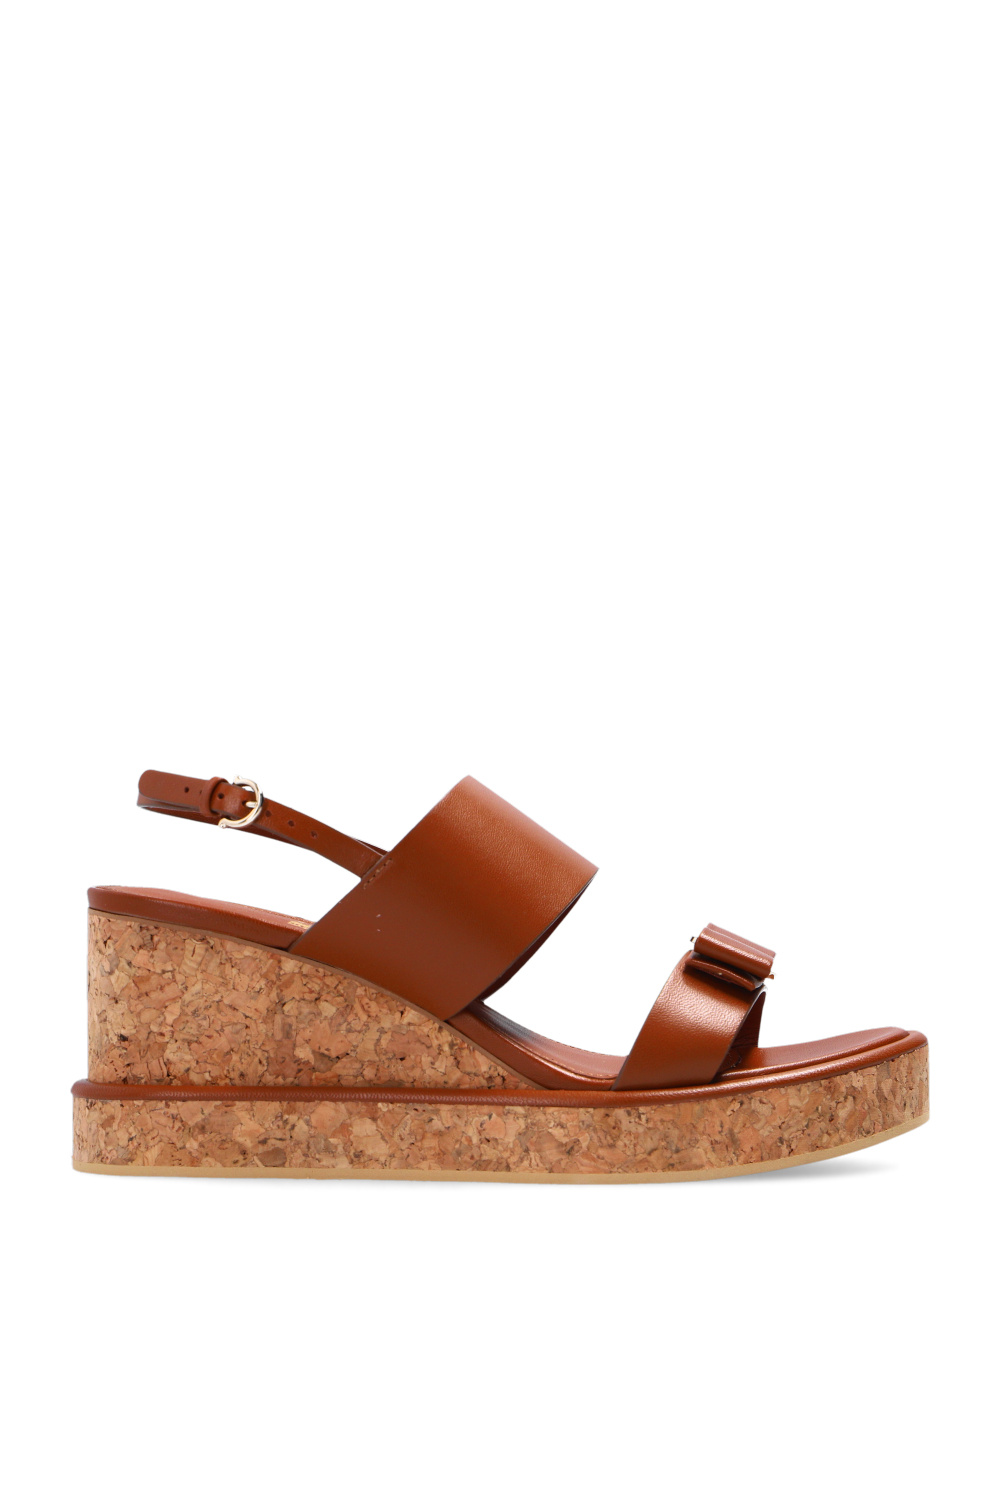 Salvatore Ferragamo ‘Giudith’ wedge sandals